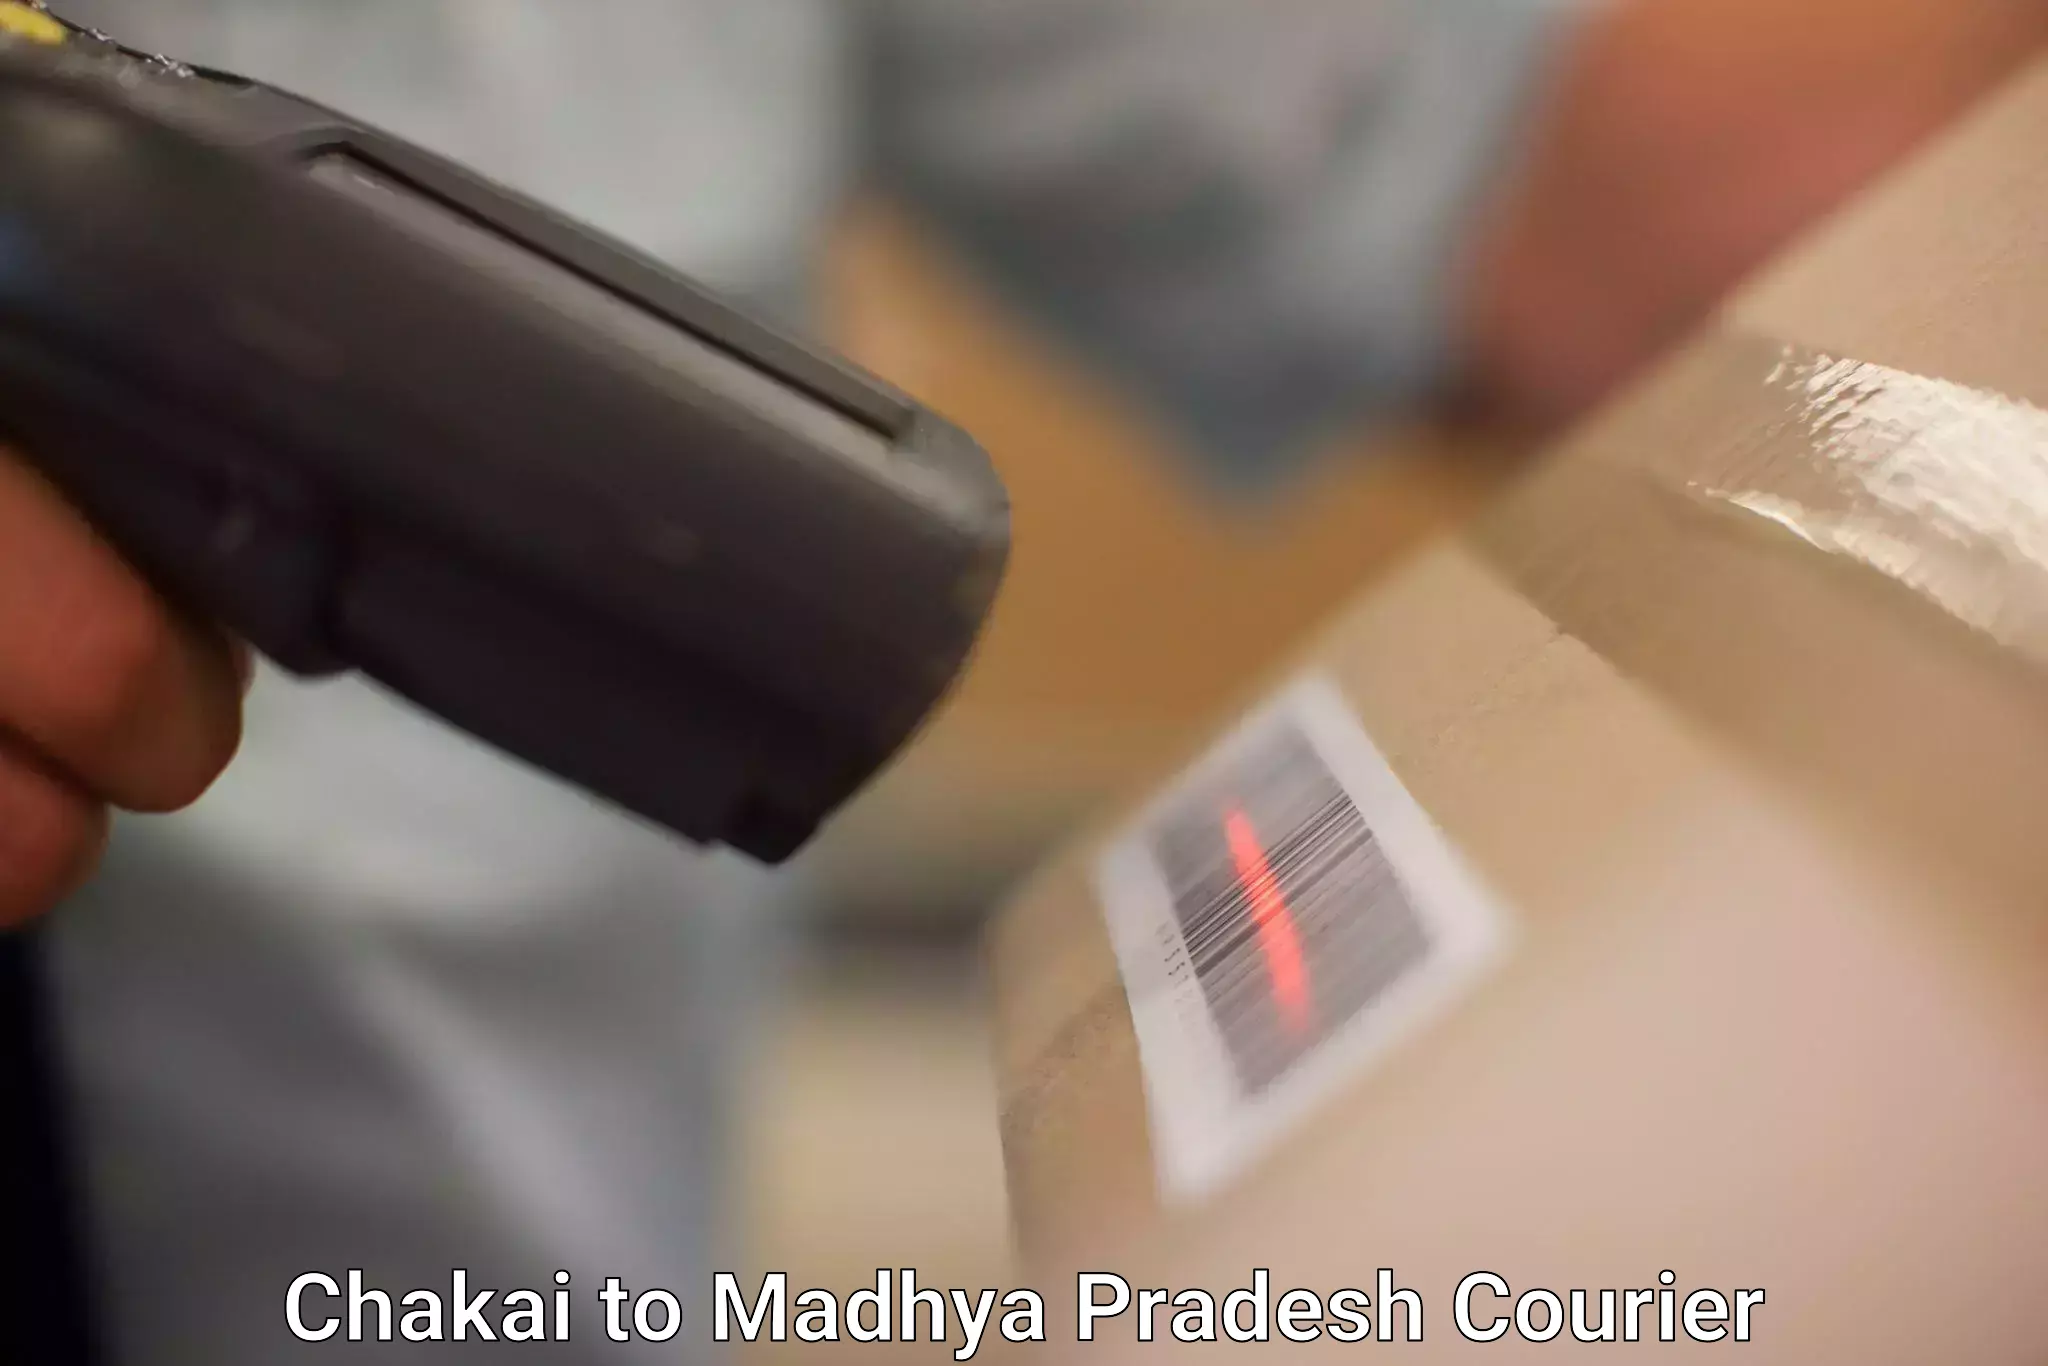 Pharmaceutical courier Chakai to Chand Chaurai